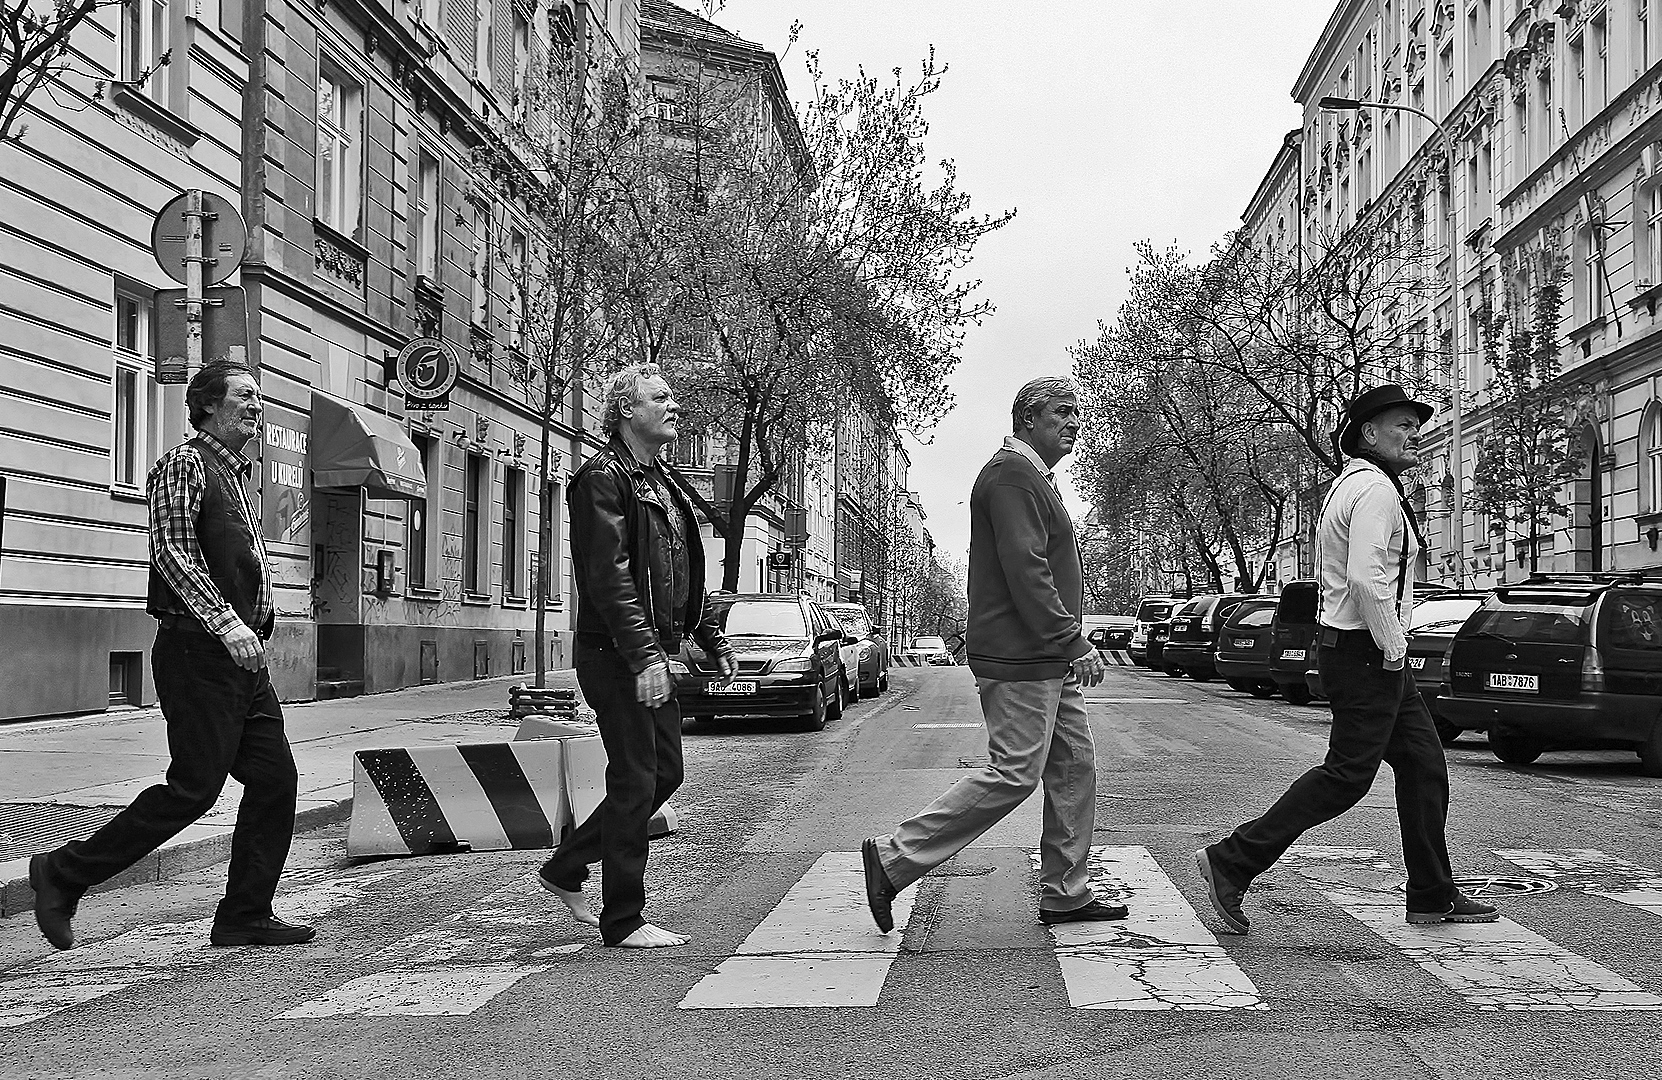 Czech Abbey Road